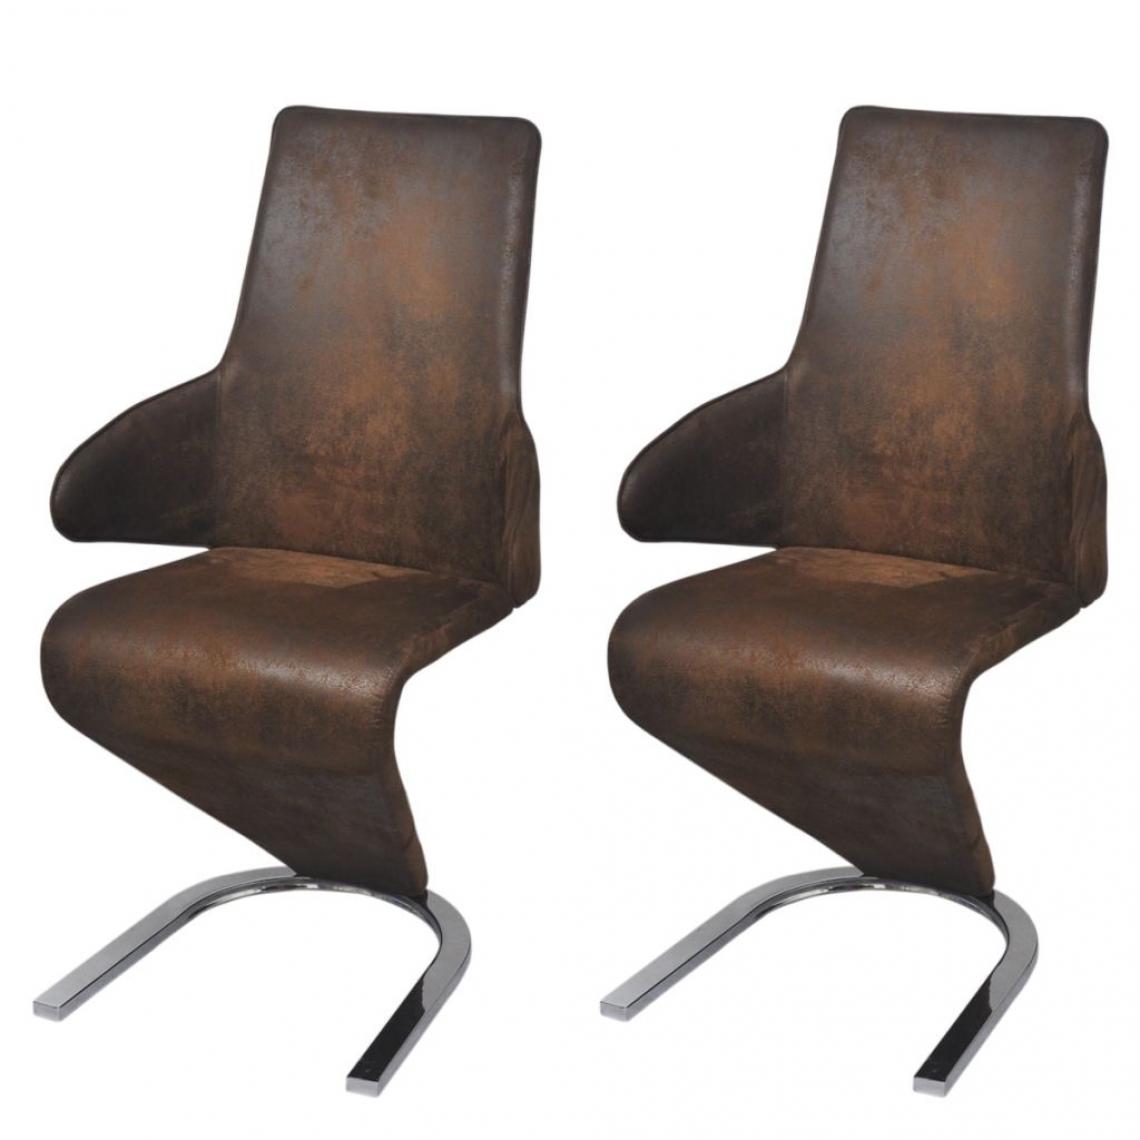 Decoshop26 - Lot de 2 chaises de salle à manger cuisine design moderne tissu marron CDS020750 - Chaises